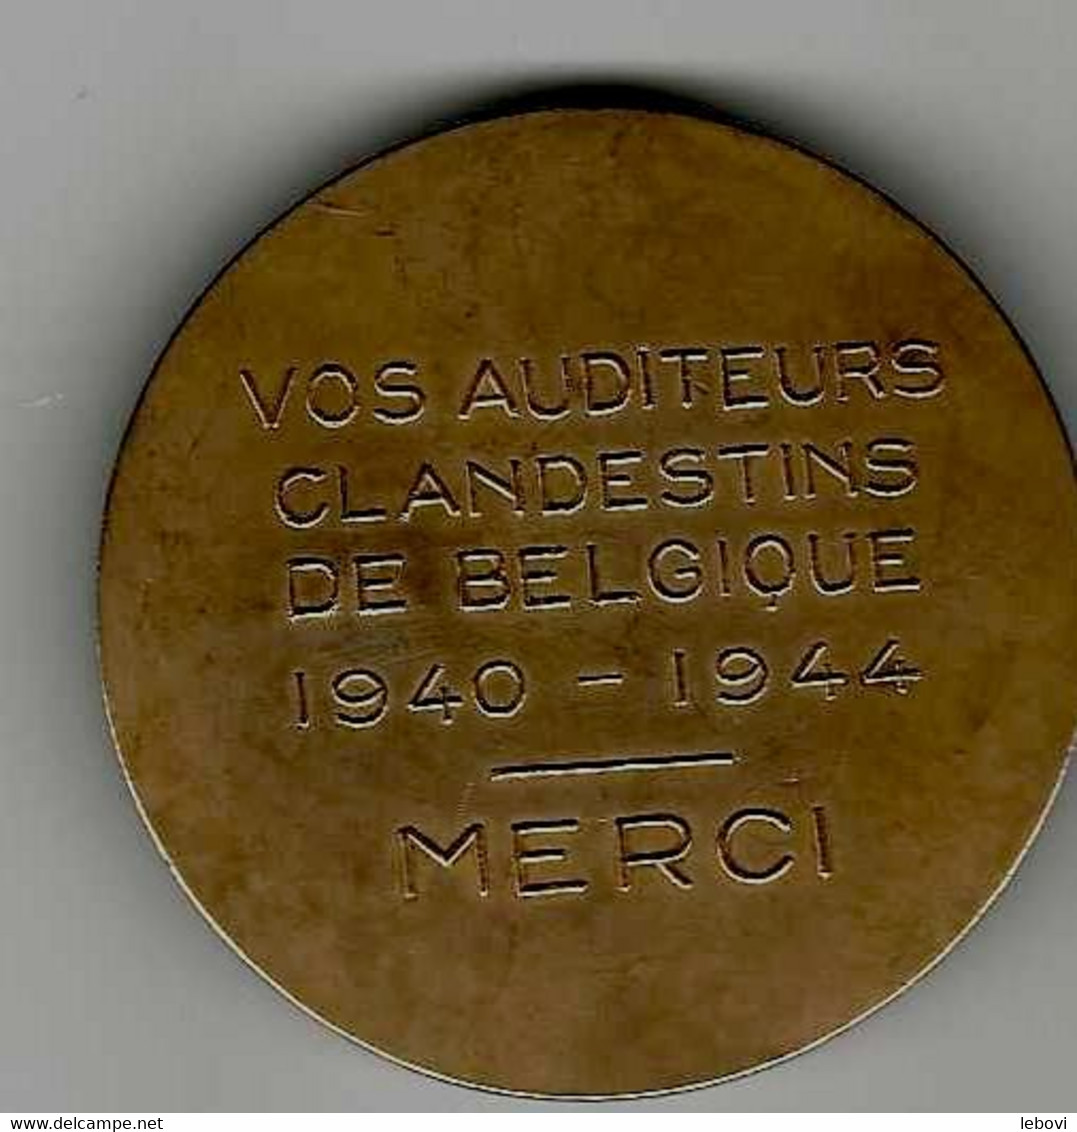 BELGIQUE – AVERS « RENE PAYOT» - REVERS «Vos Auditeurs/clandestins/de Belgique/1940 – 1944/merci » - Professionali / Di Società